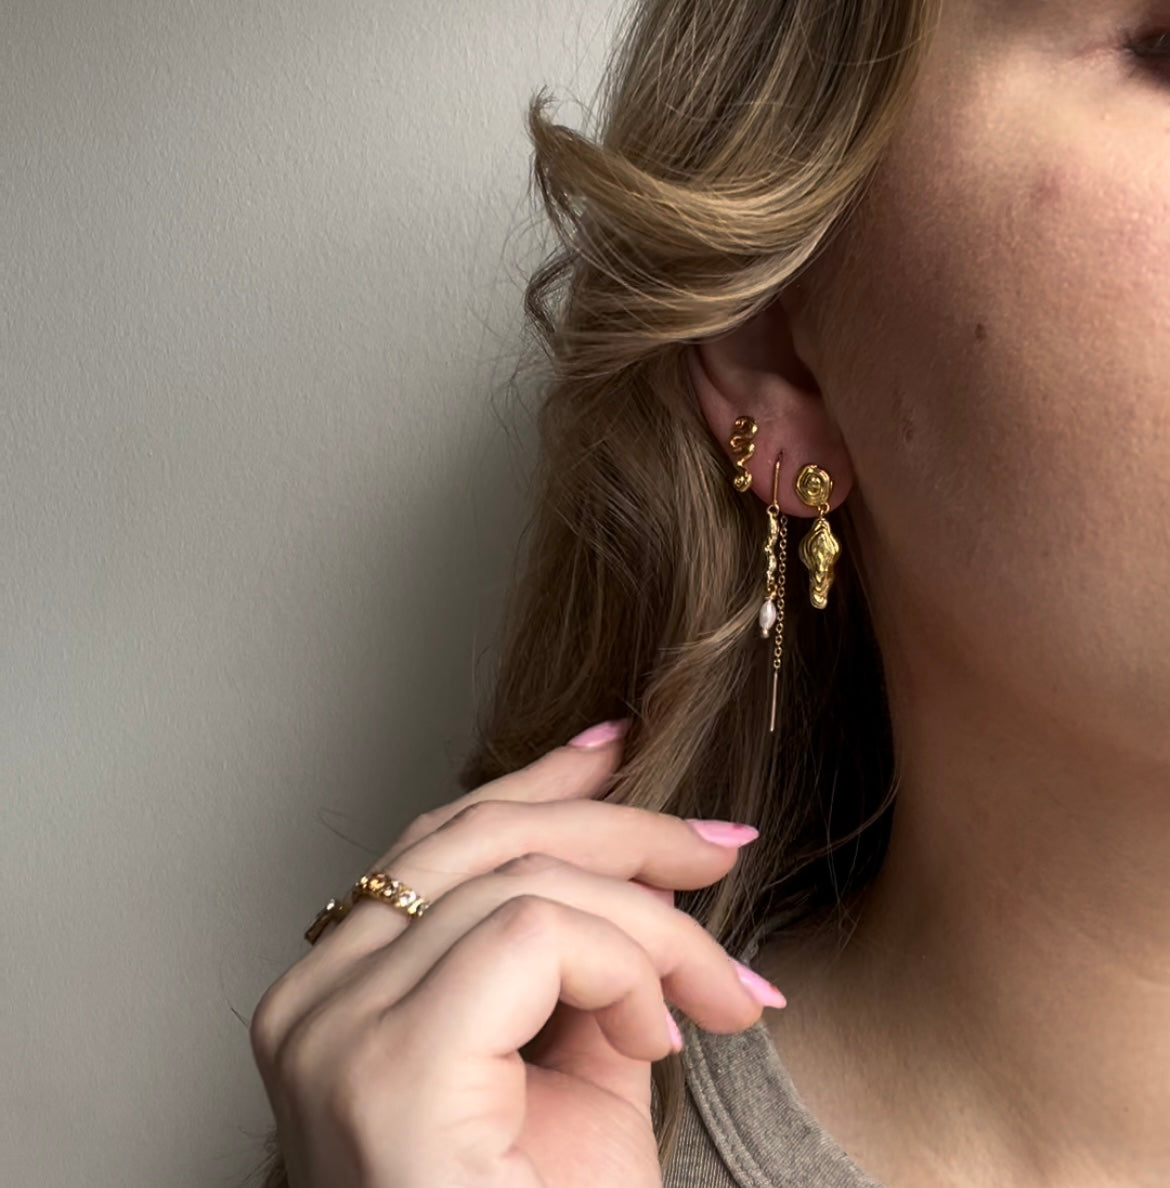 Tangled earrings